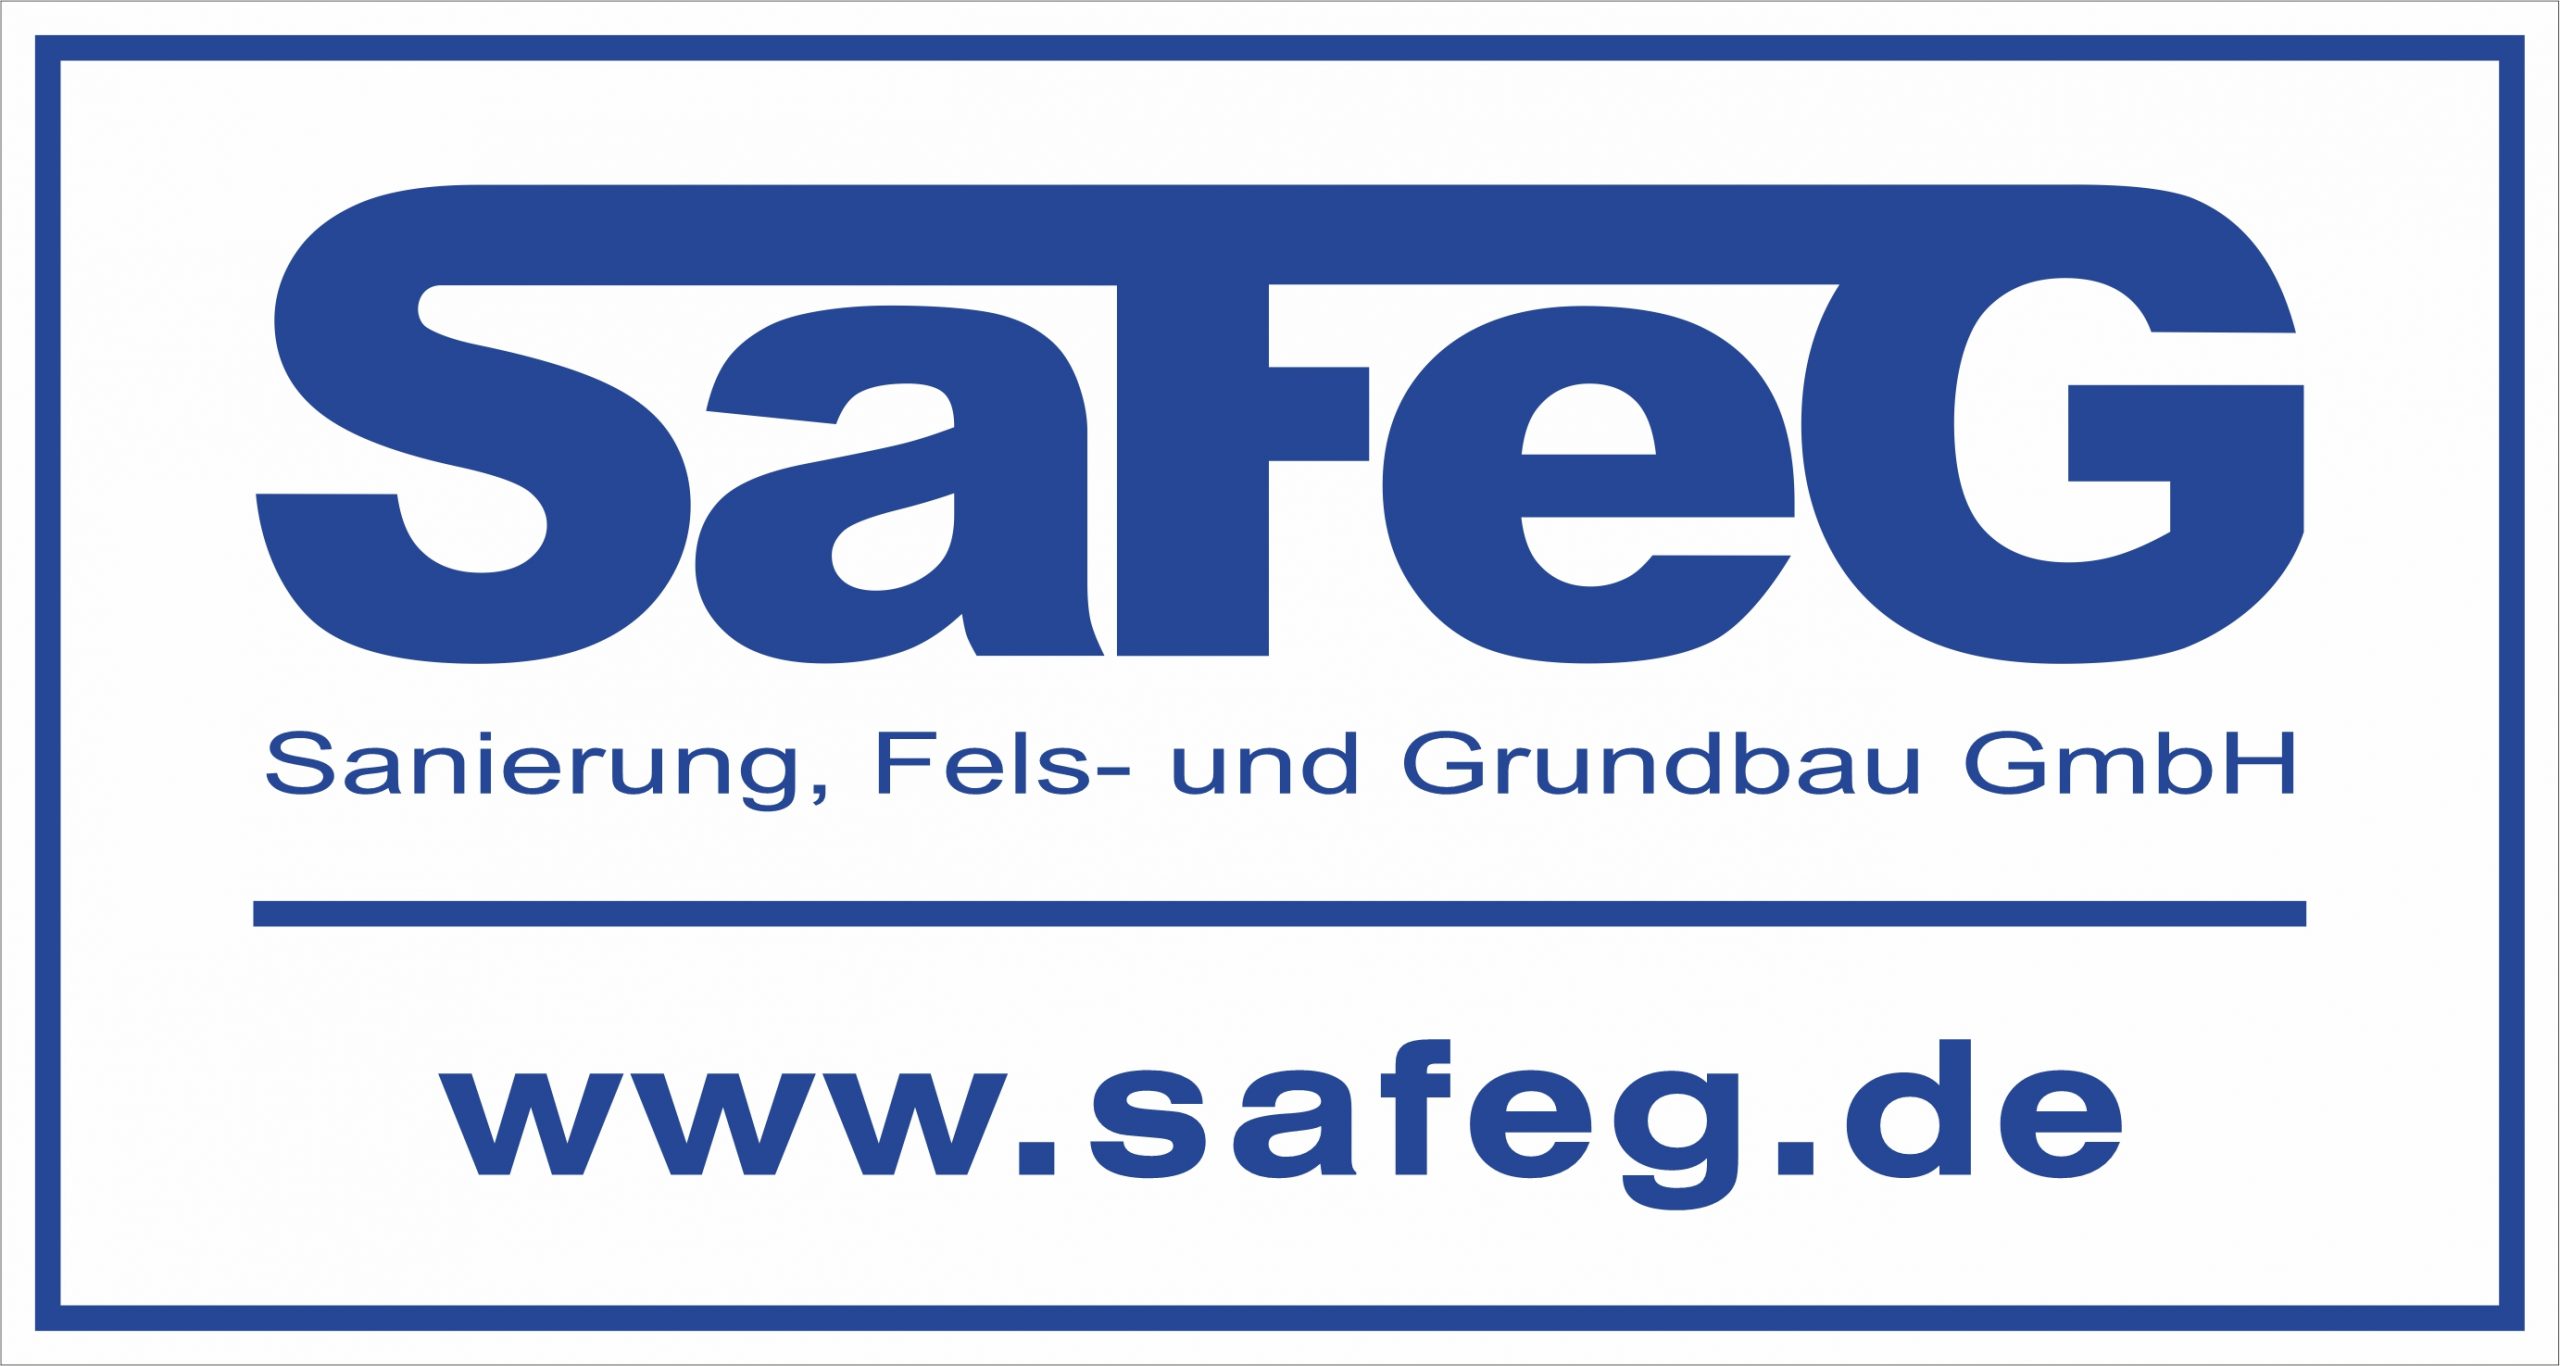 SAFEG Sanierung, Fels-und Grundbau GmbH